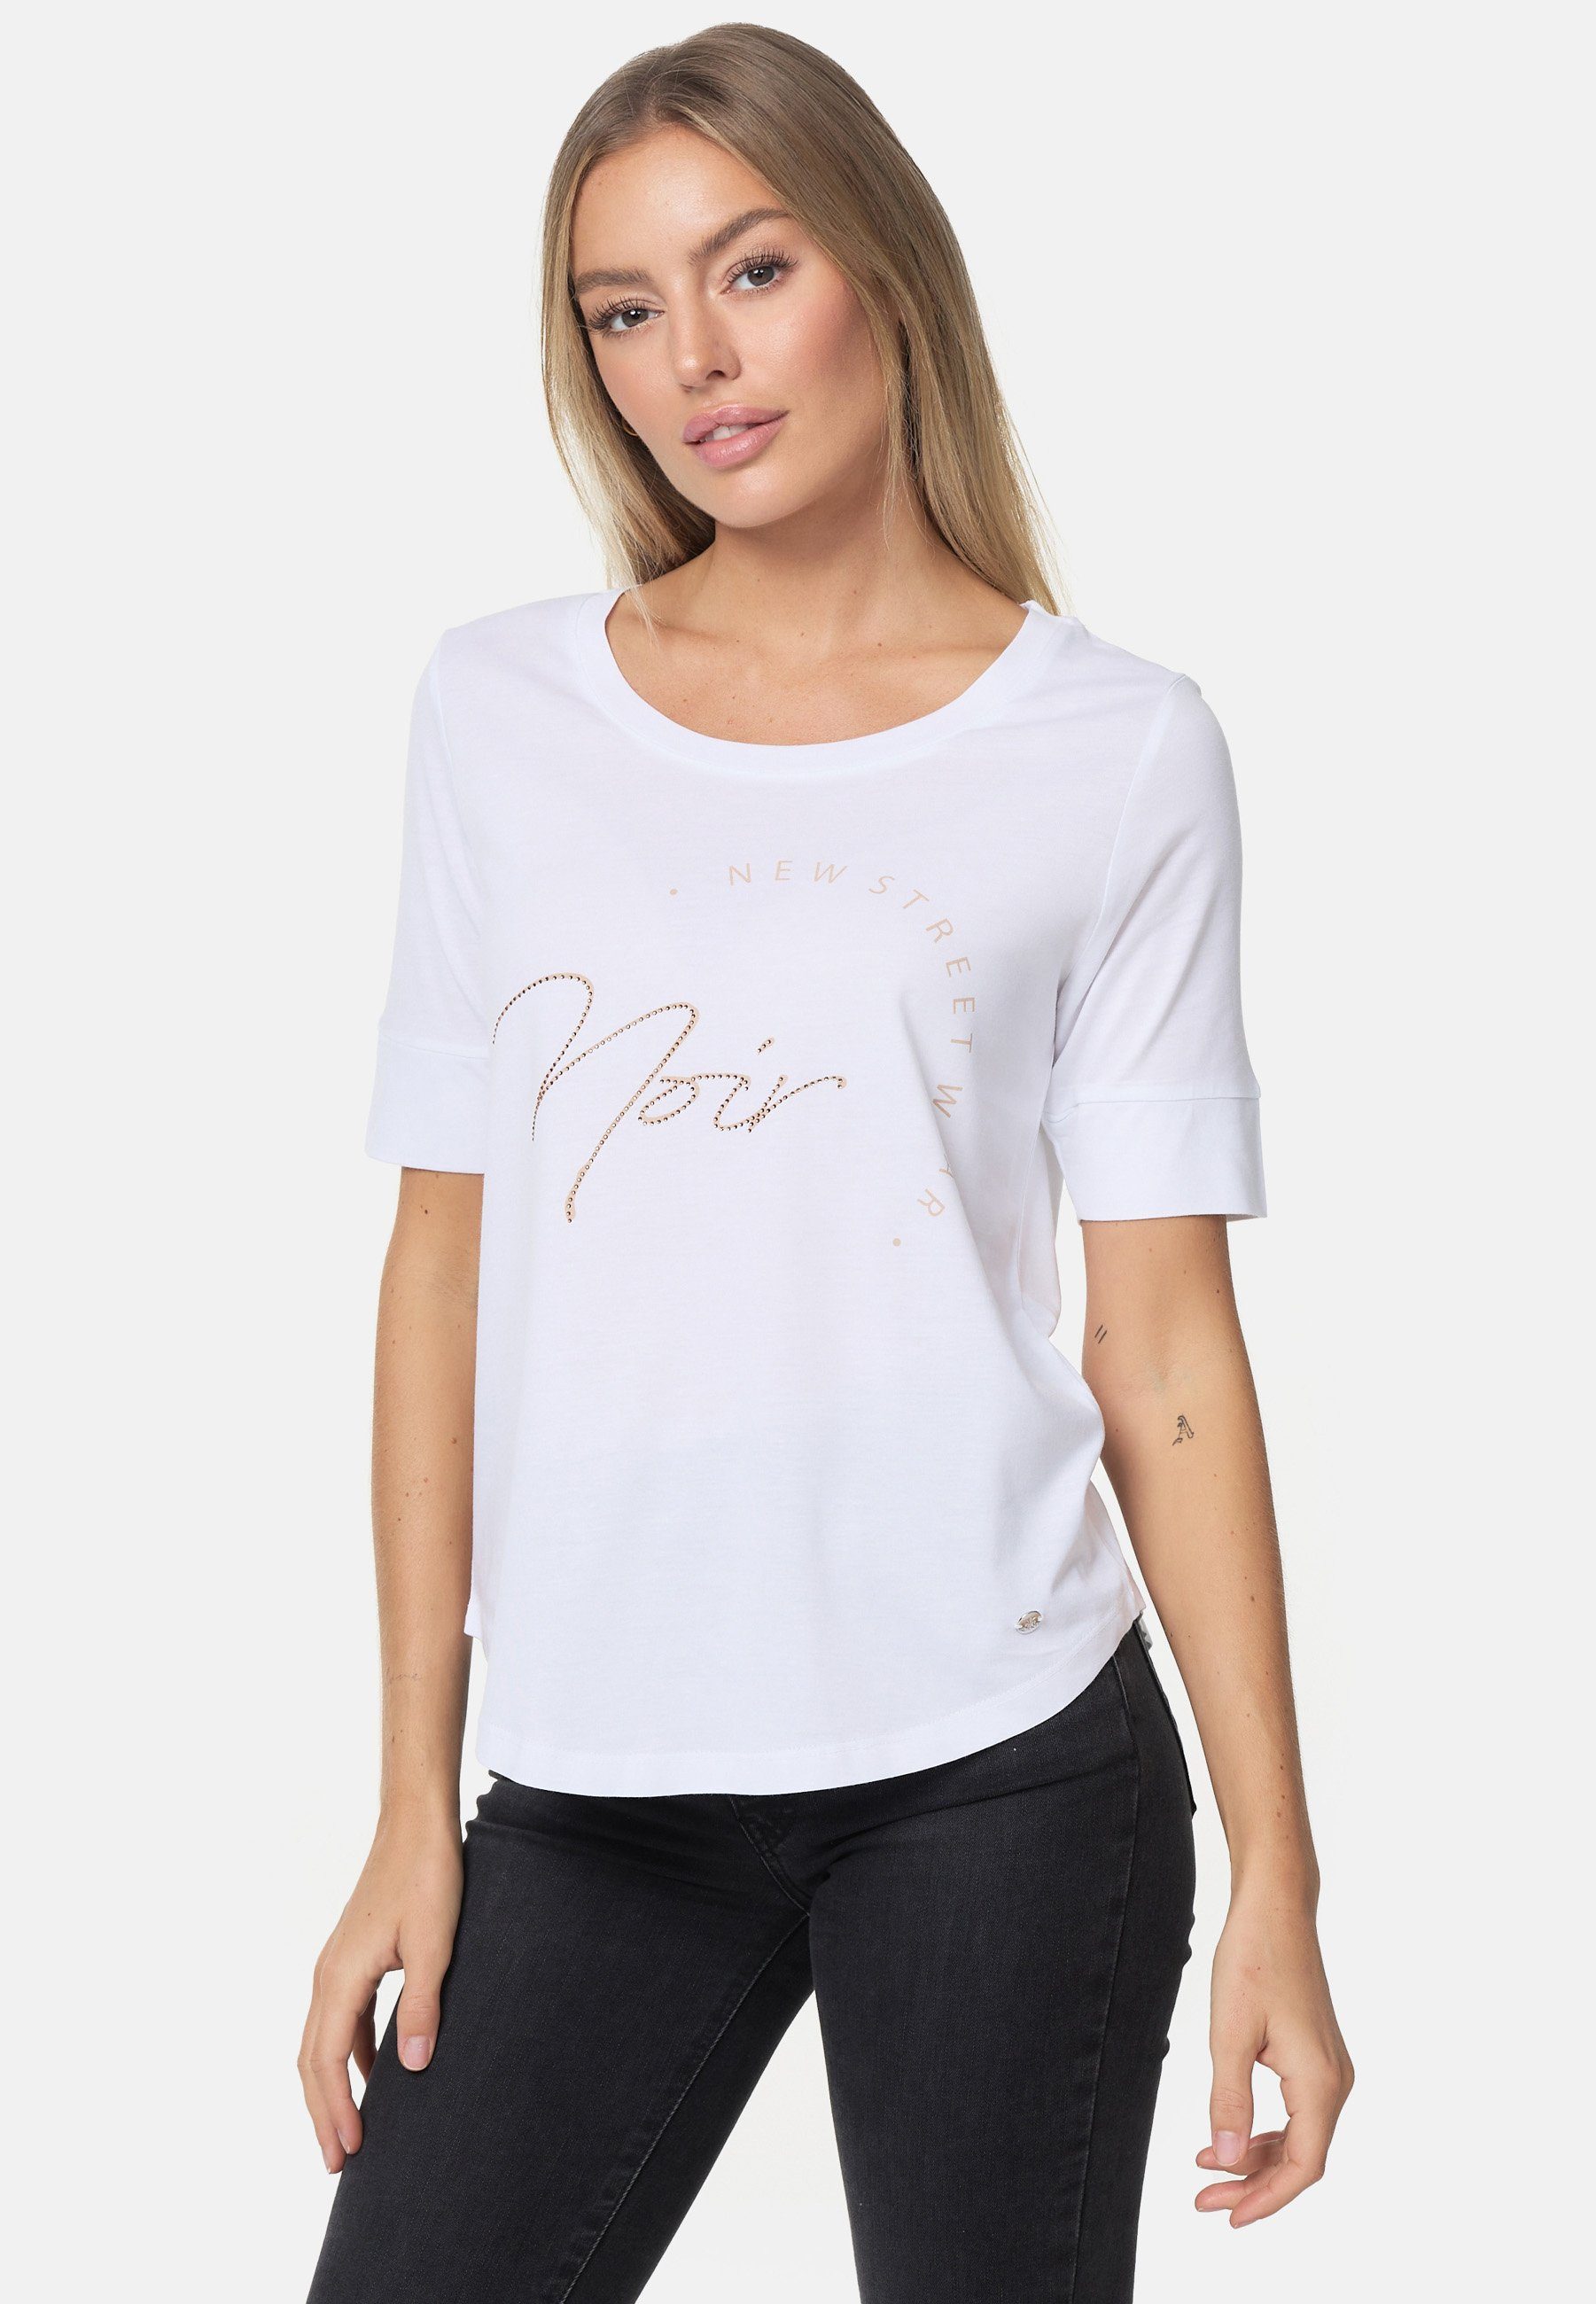 weiß-beige Decay schimmerndem T-Shirt mit Schriftzug